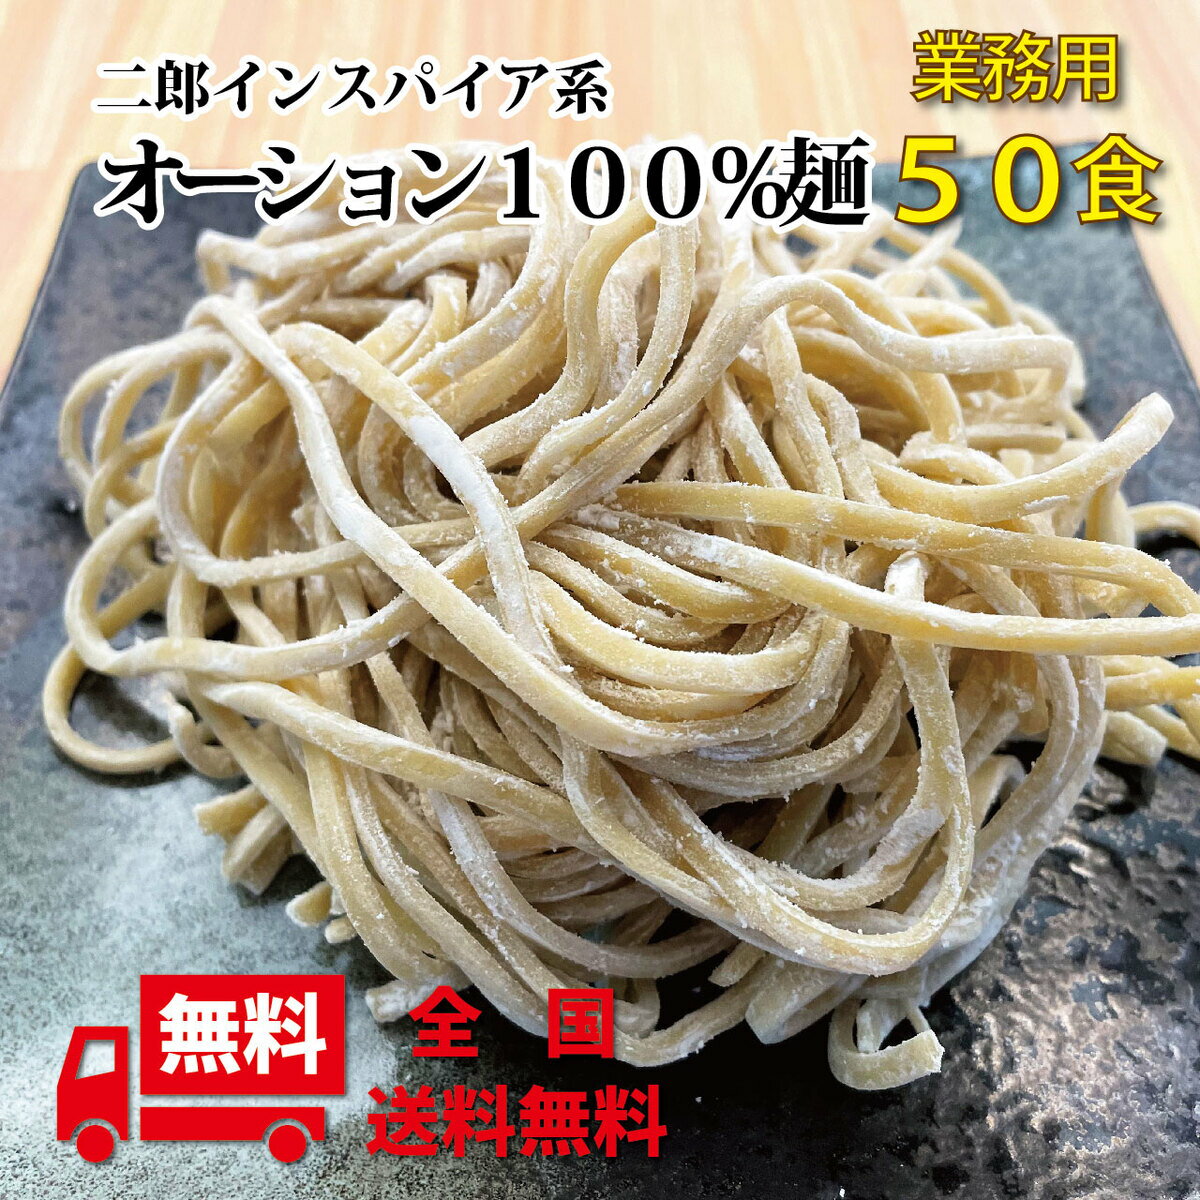 二郎ラーメン インスパイア オーション麺 生麺×50食 業務用 極太麺 二郎系 麺のみ